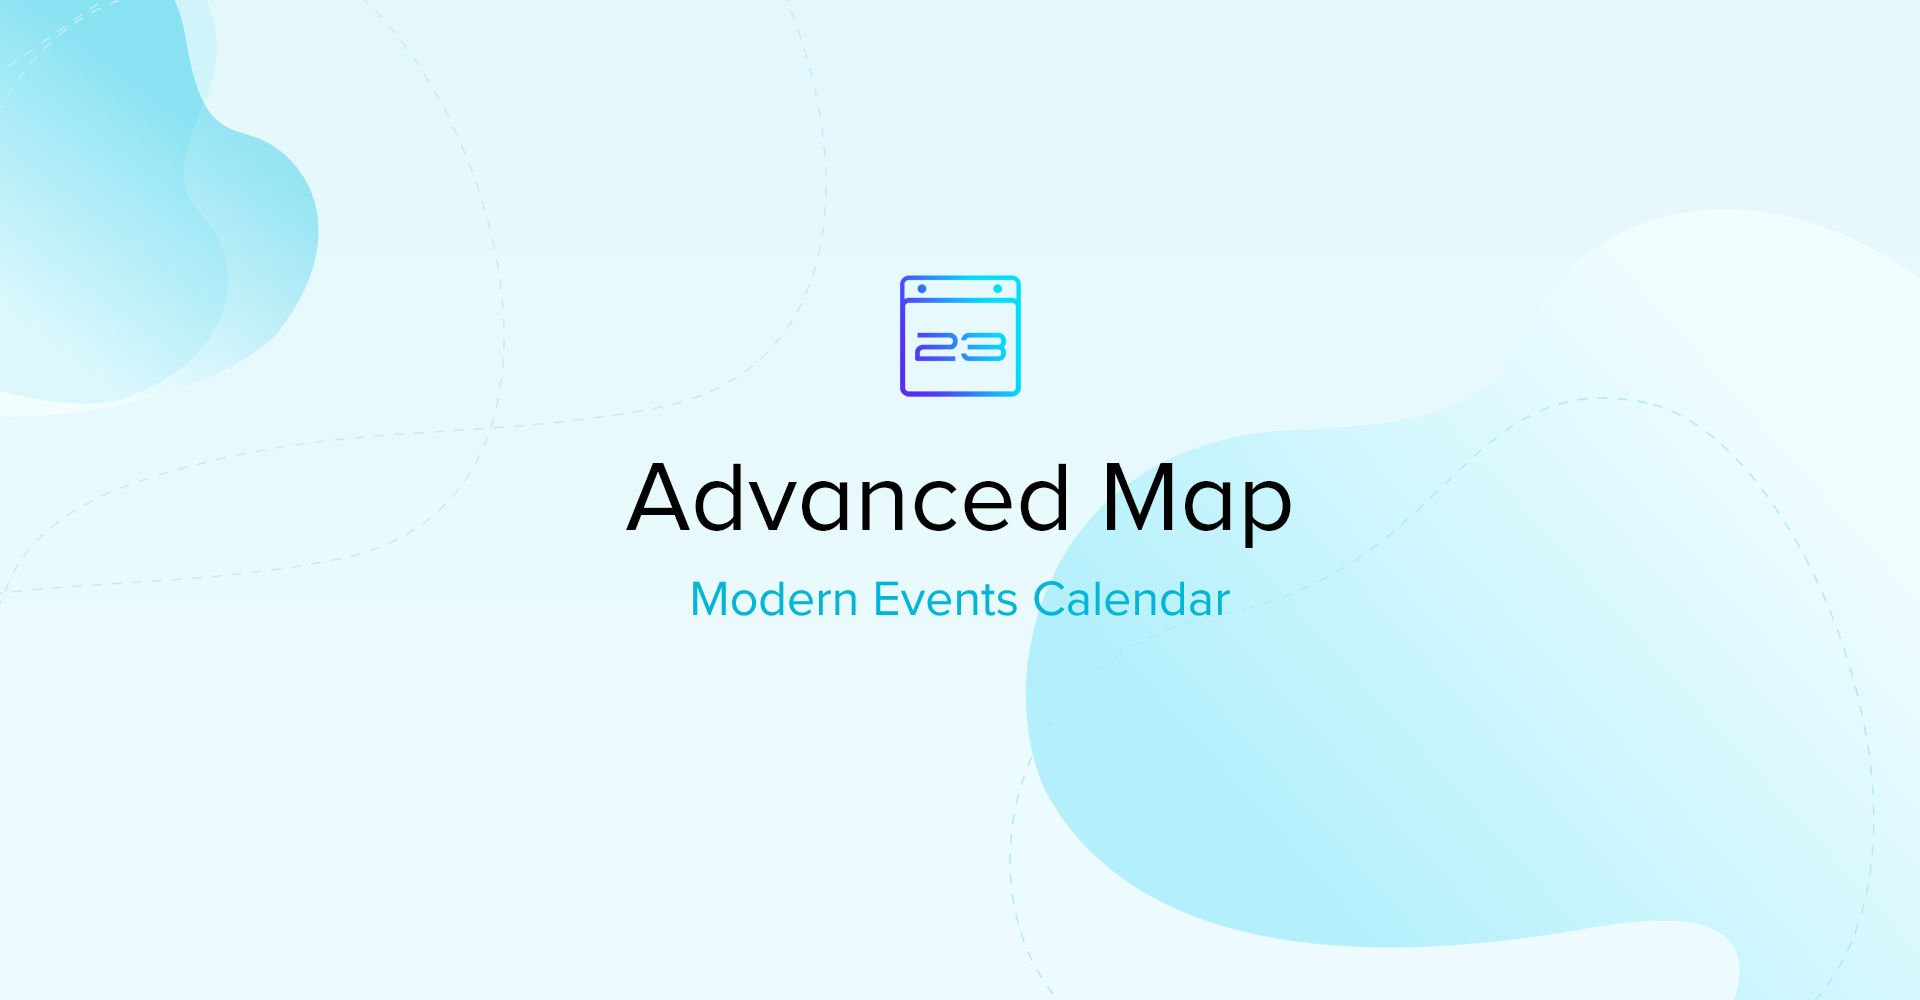 Modern Events Calendar Advanced Map.jpg